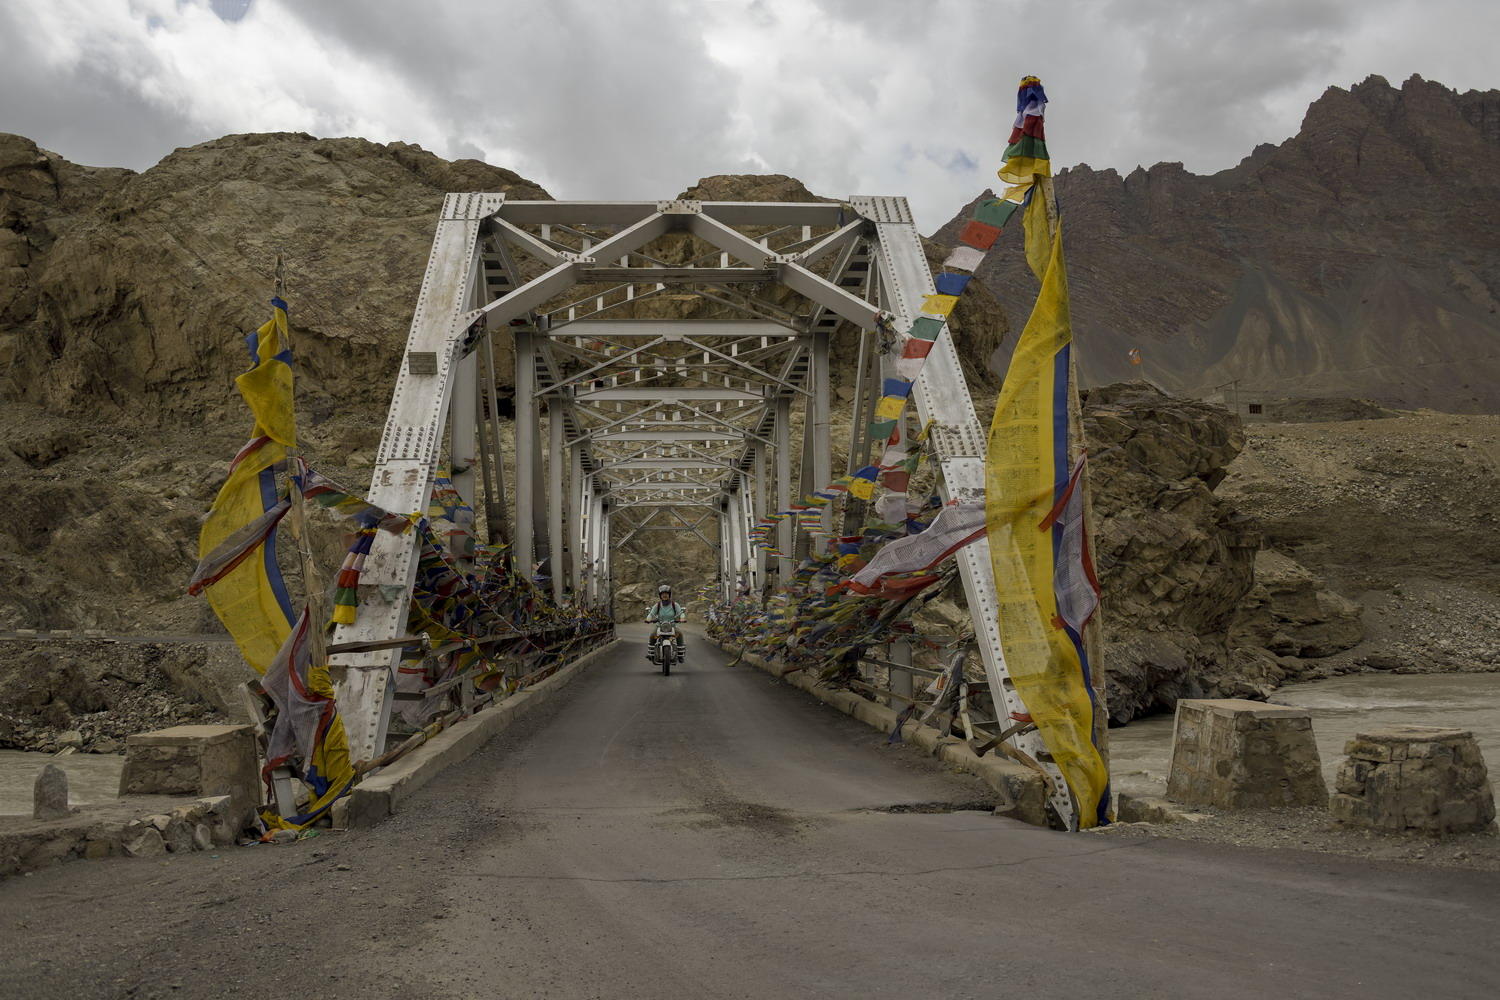 DSC_1026_1A2 - Indus River Bridge (Alchi Road)